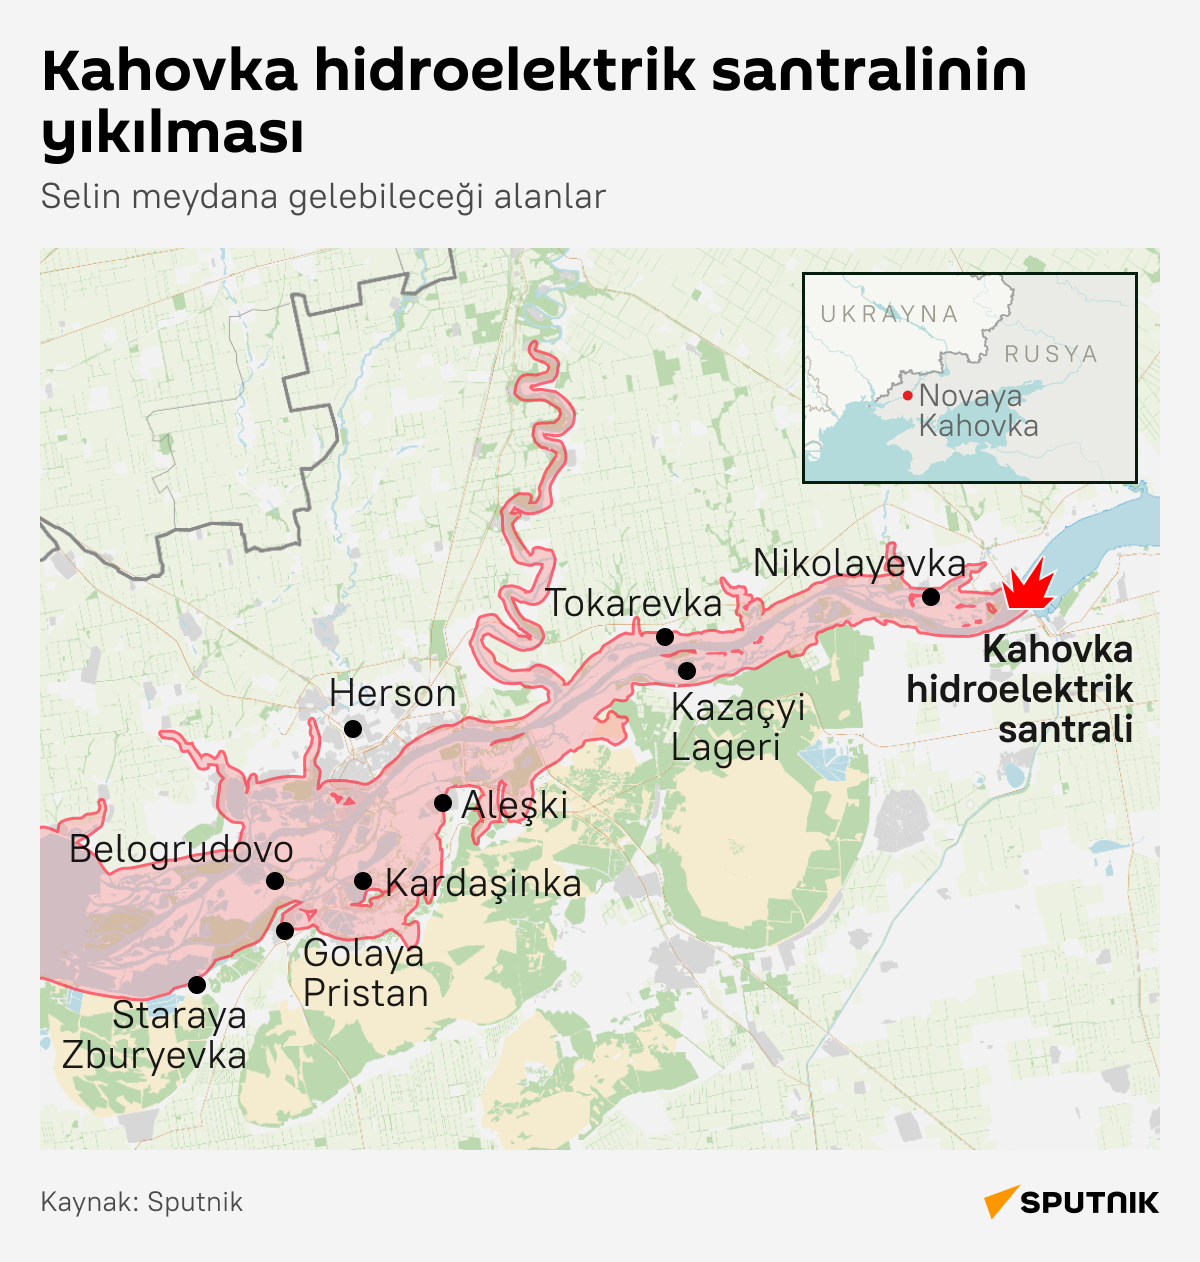 İnfografik Kahovka hidroelektrik santralinin yıkılması  - Sputnik Türkiye